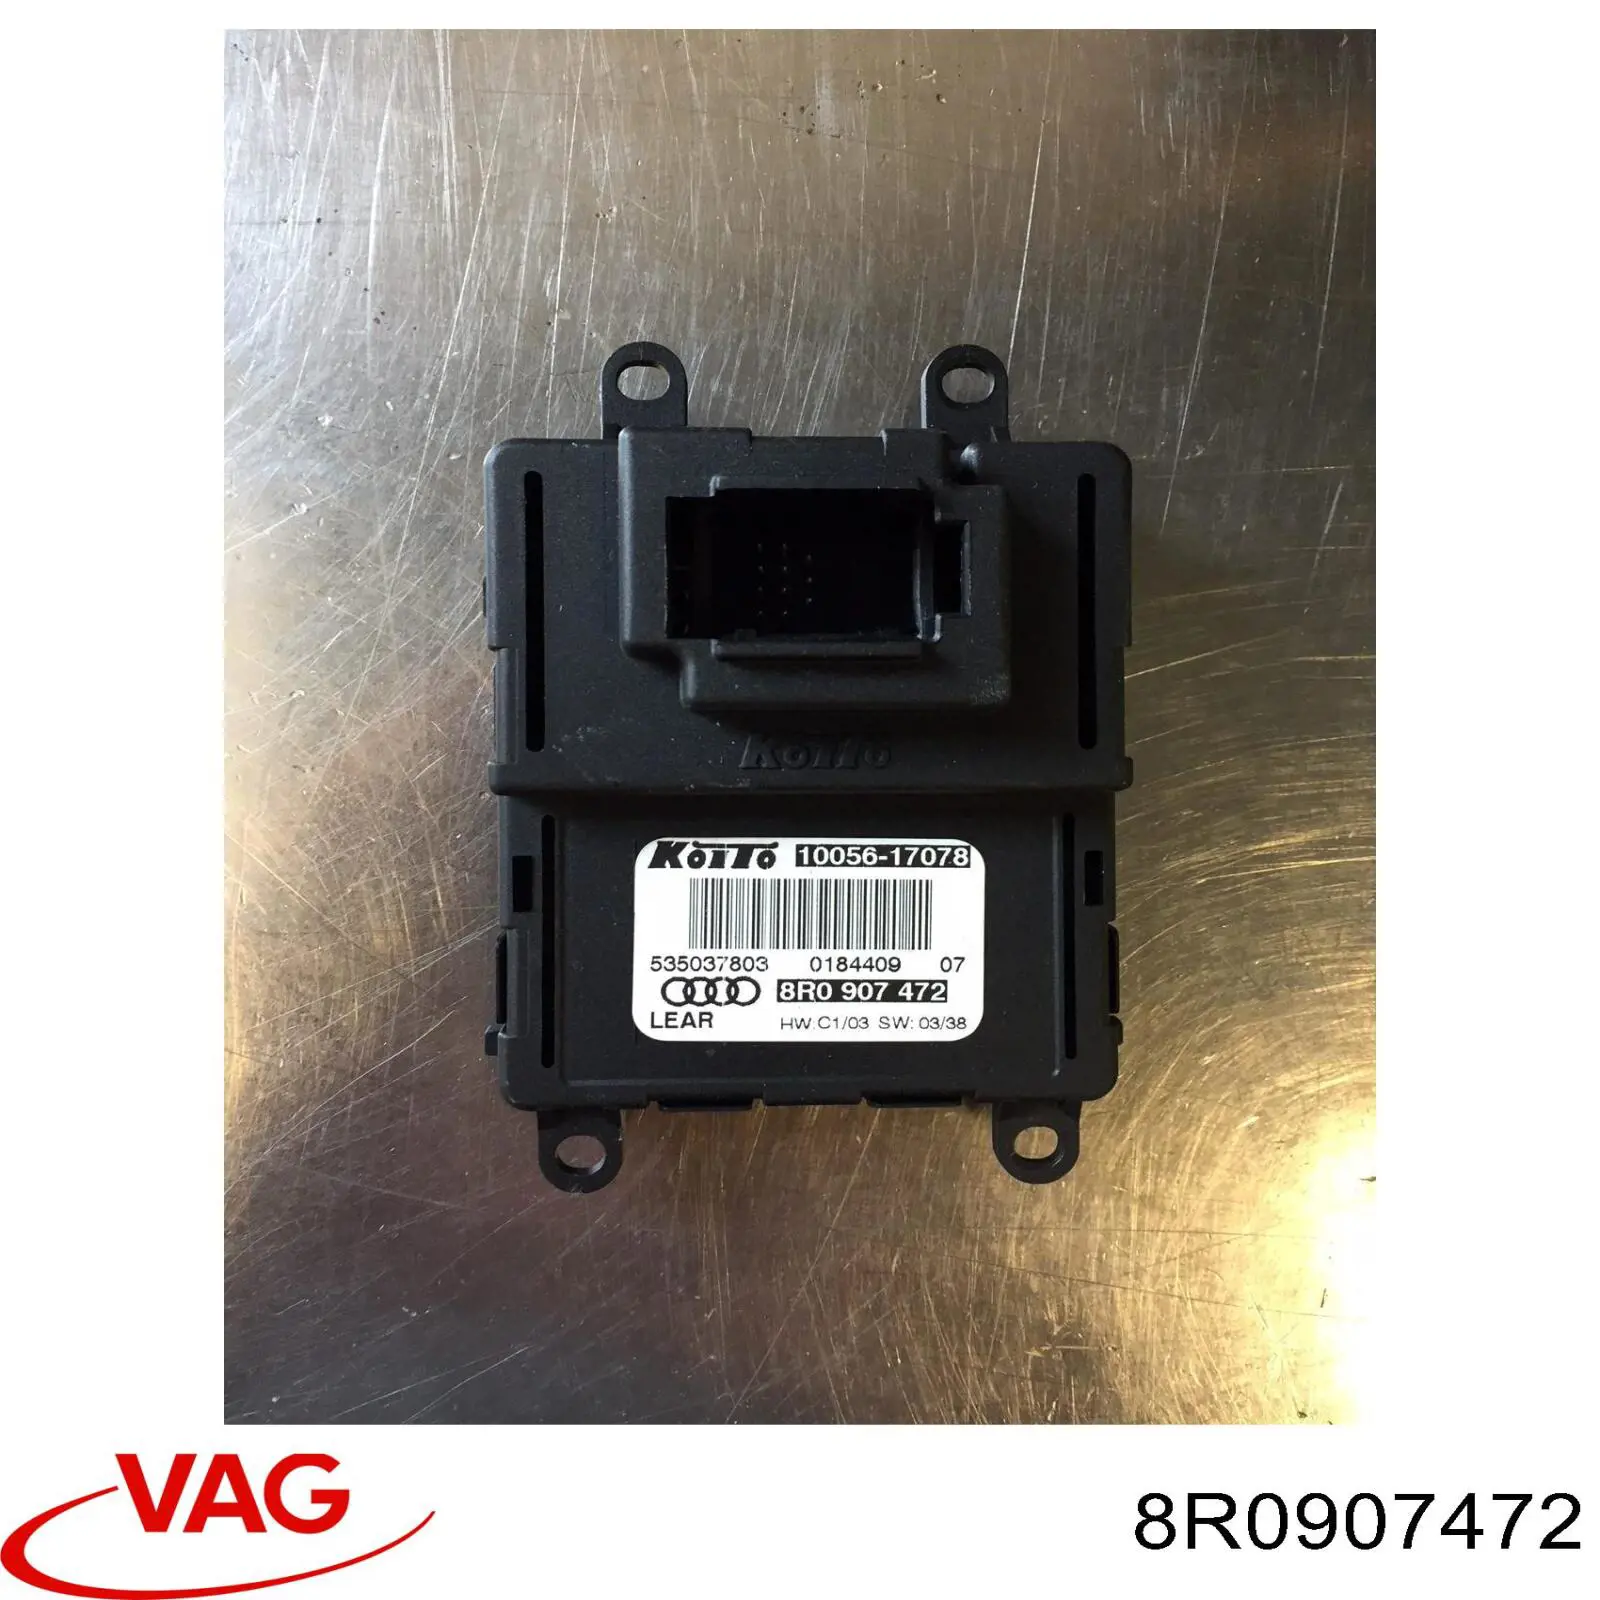 8R0998472 VAG modulo de control de faros (ecu)